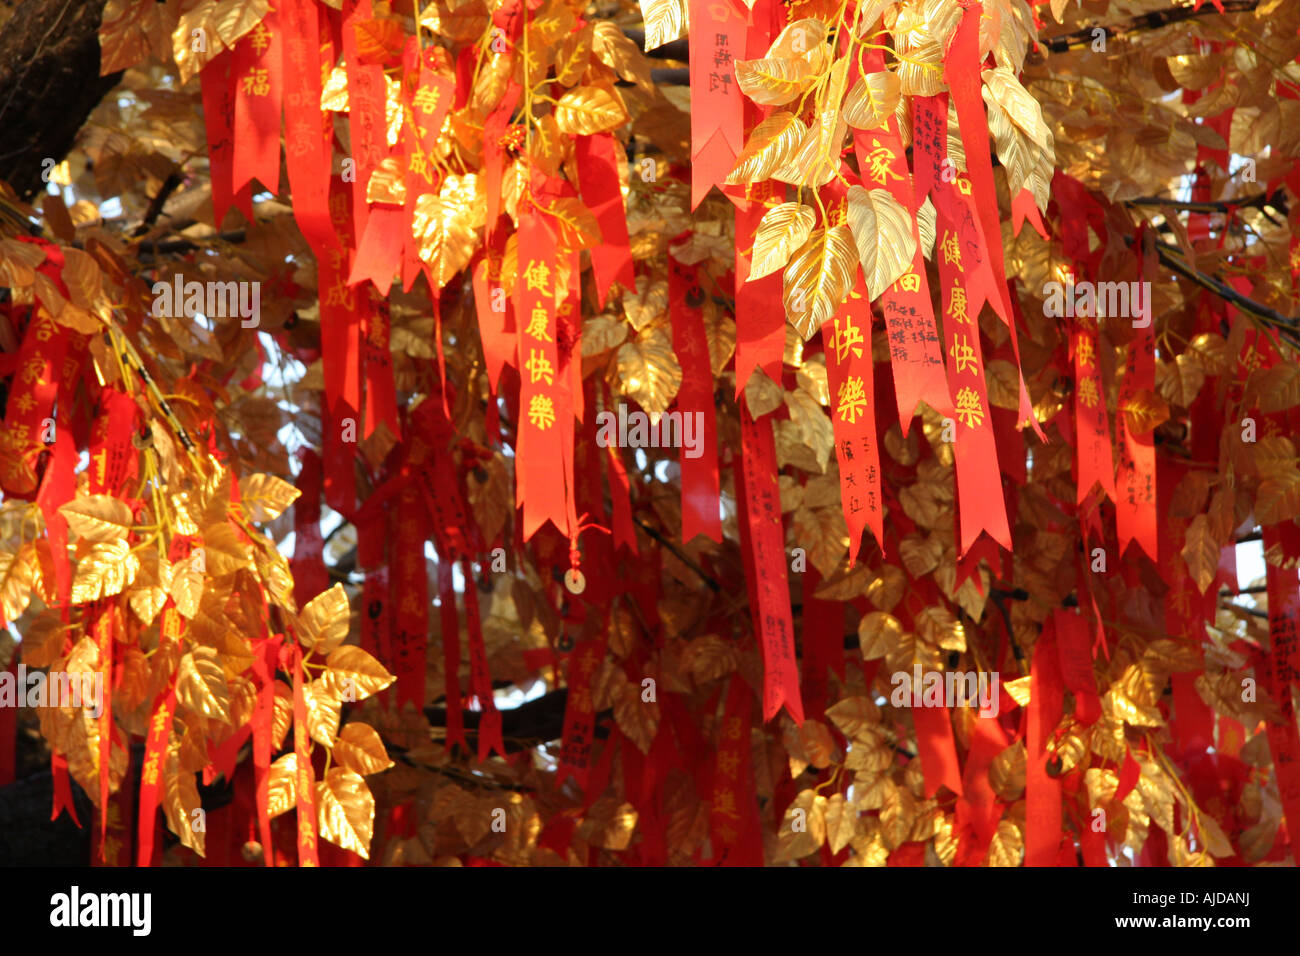 Wishing Tree in China Stock Photo